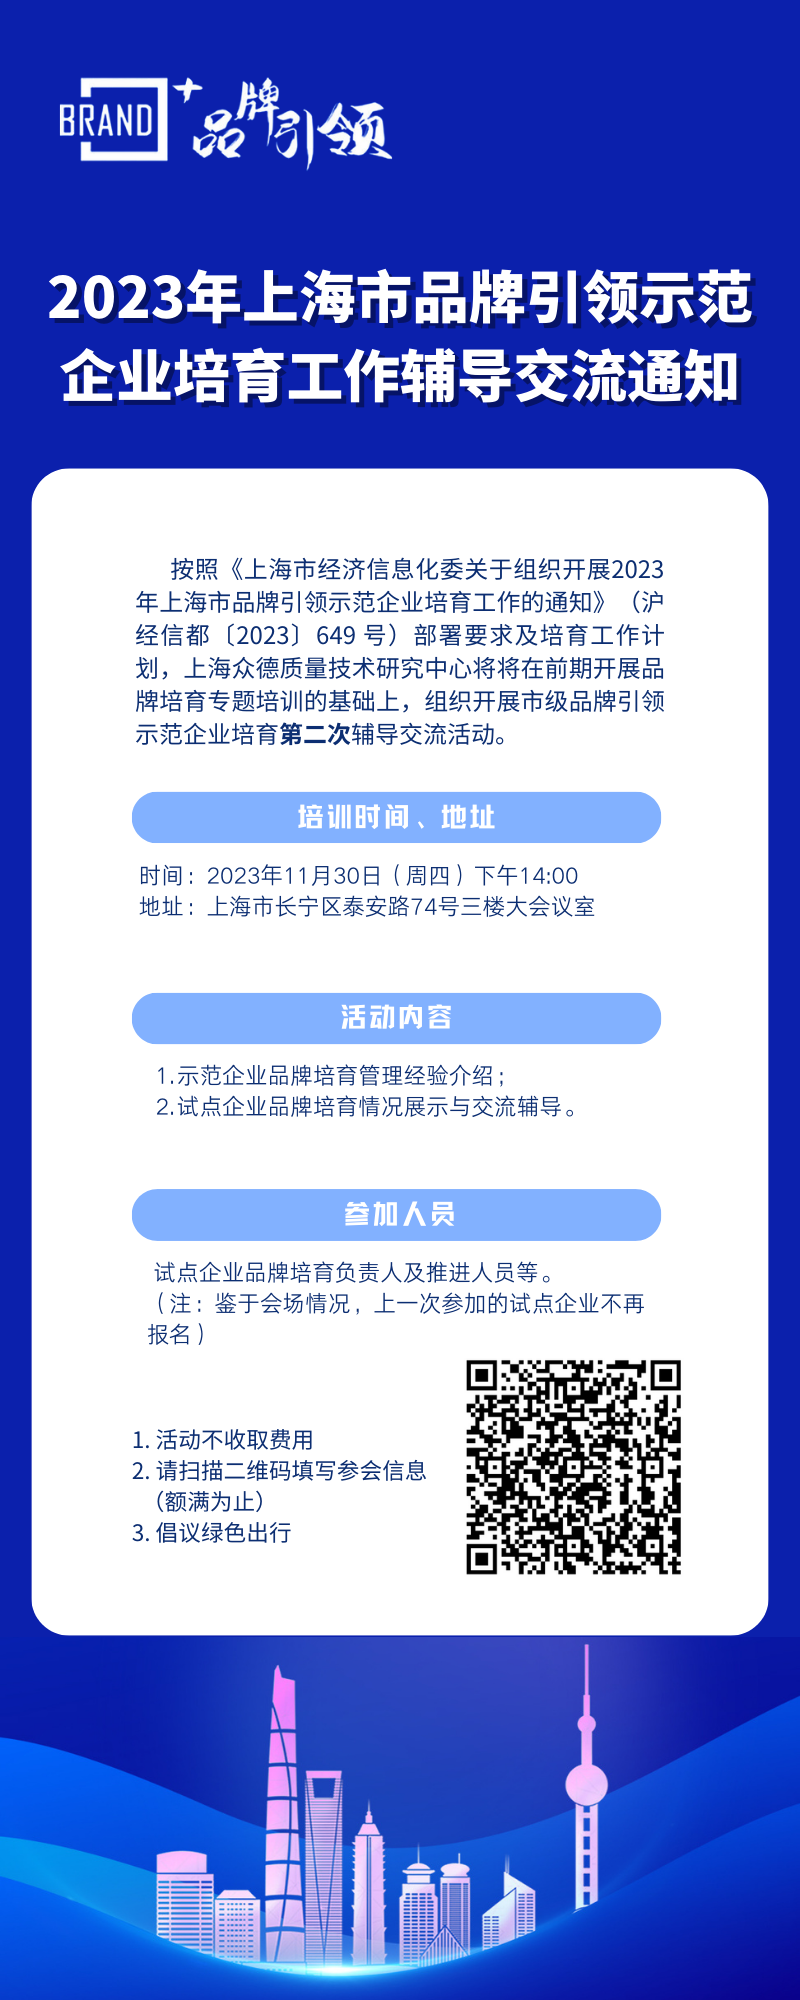 2023年上海市品牌引领示范企业培育工作辅导交流通知（11月30日）.png